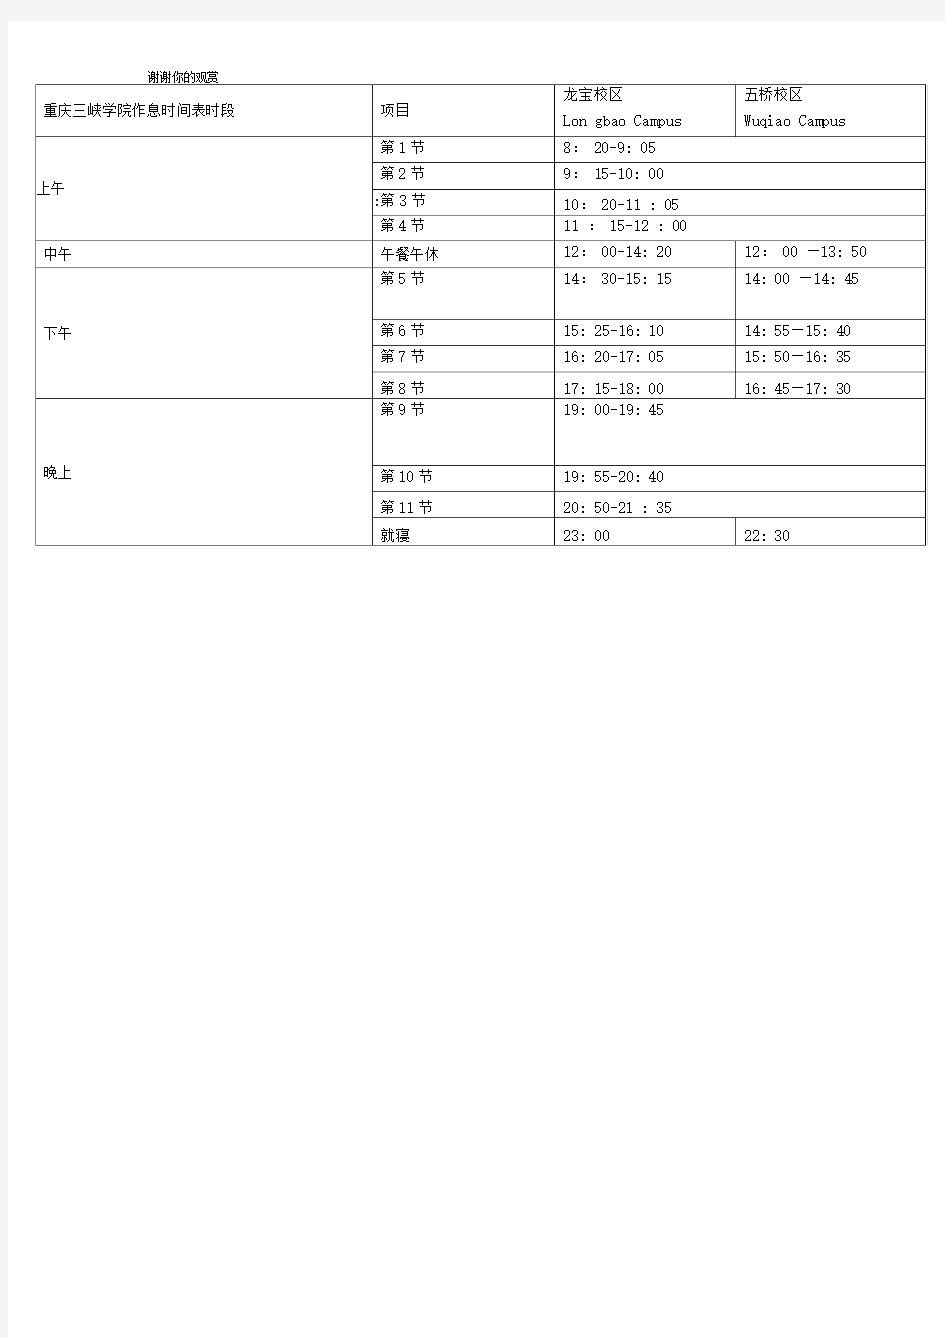 重庆三峡学院校历及作息时间表